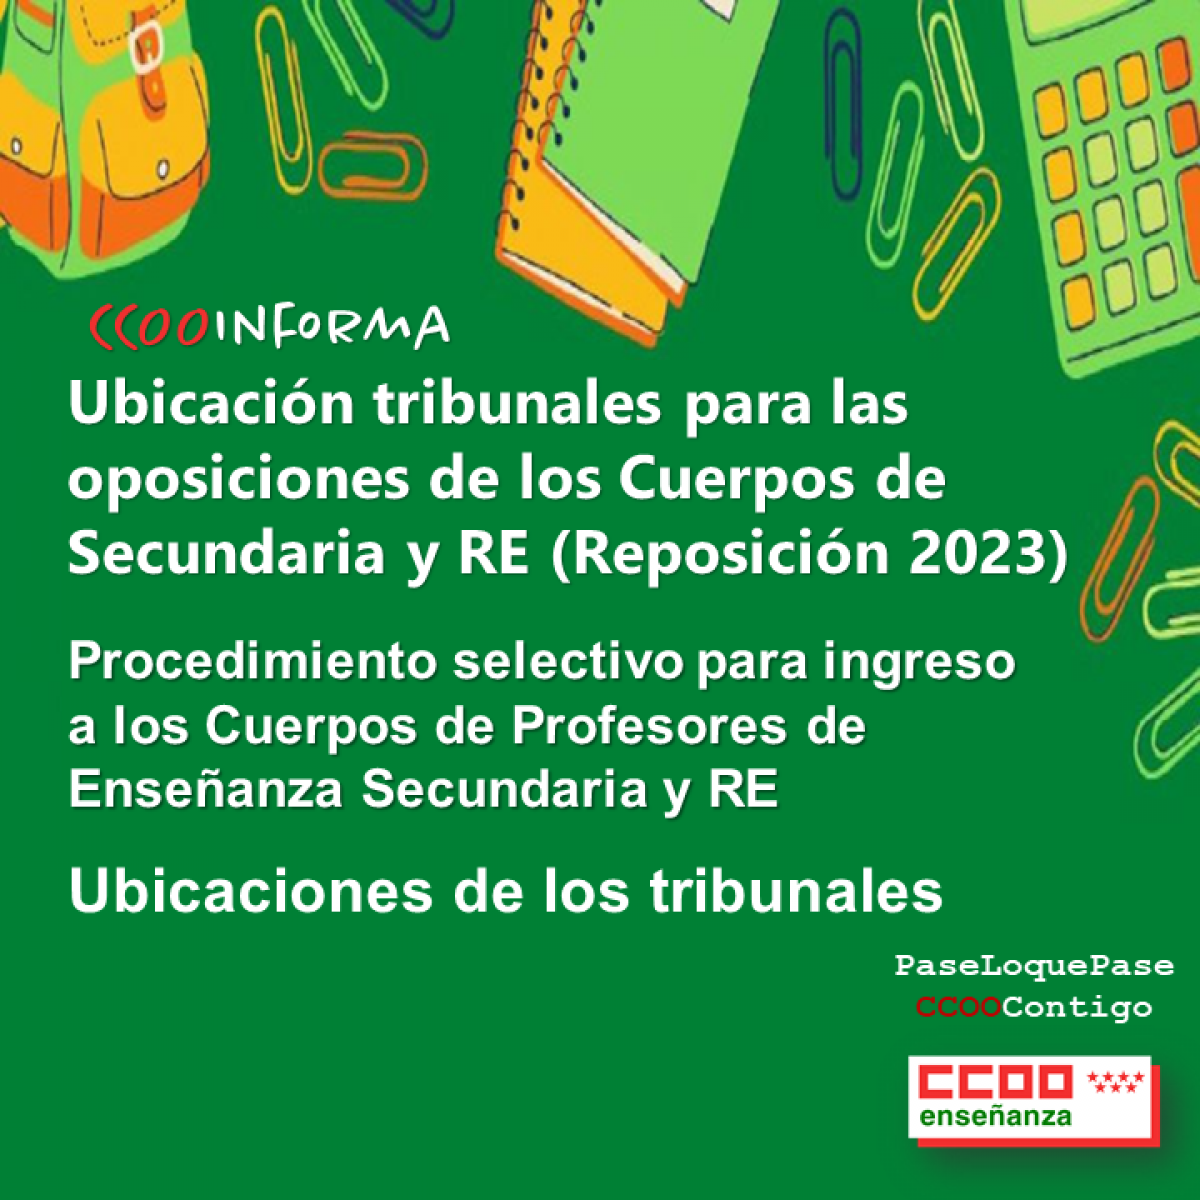 UBICACIÓN TRIBUNALES PARA LAS OPOSICIONES DE LOS CUERPOS DE SECUNDARIA Y RE (REPOSICIÓN 2023)